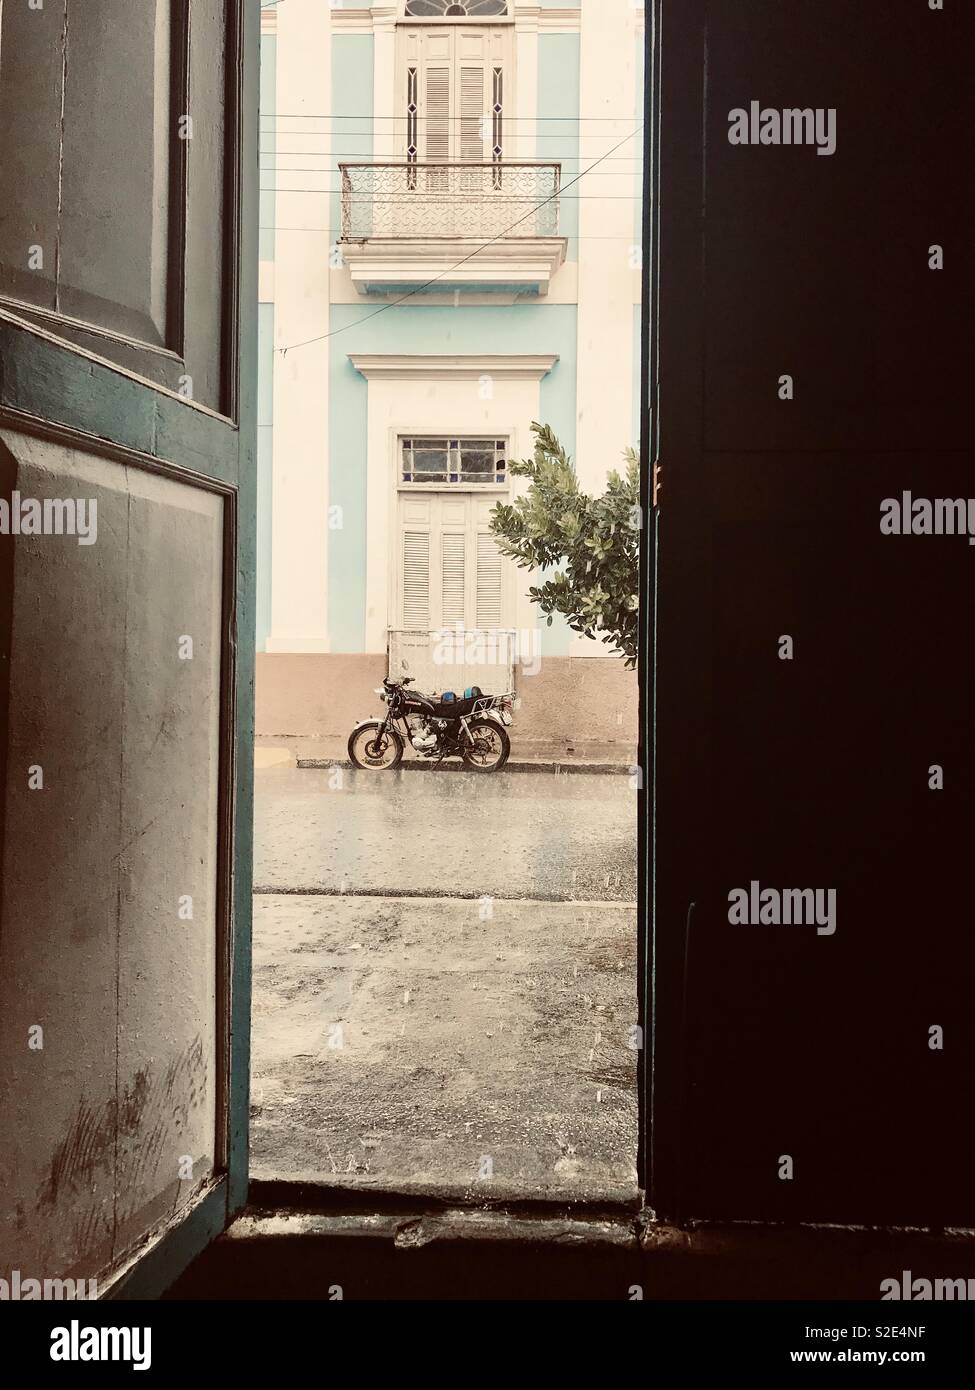 All'interno di un bar a guardare una moto sotto la pioggia battente a Cienfuegos Cuba Foto Stock